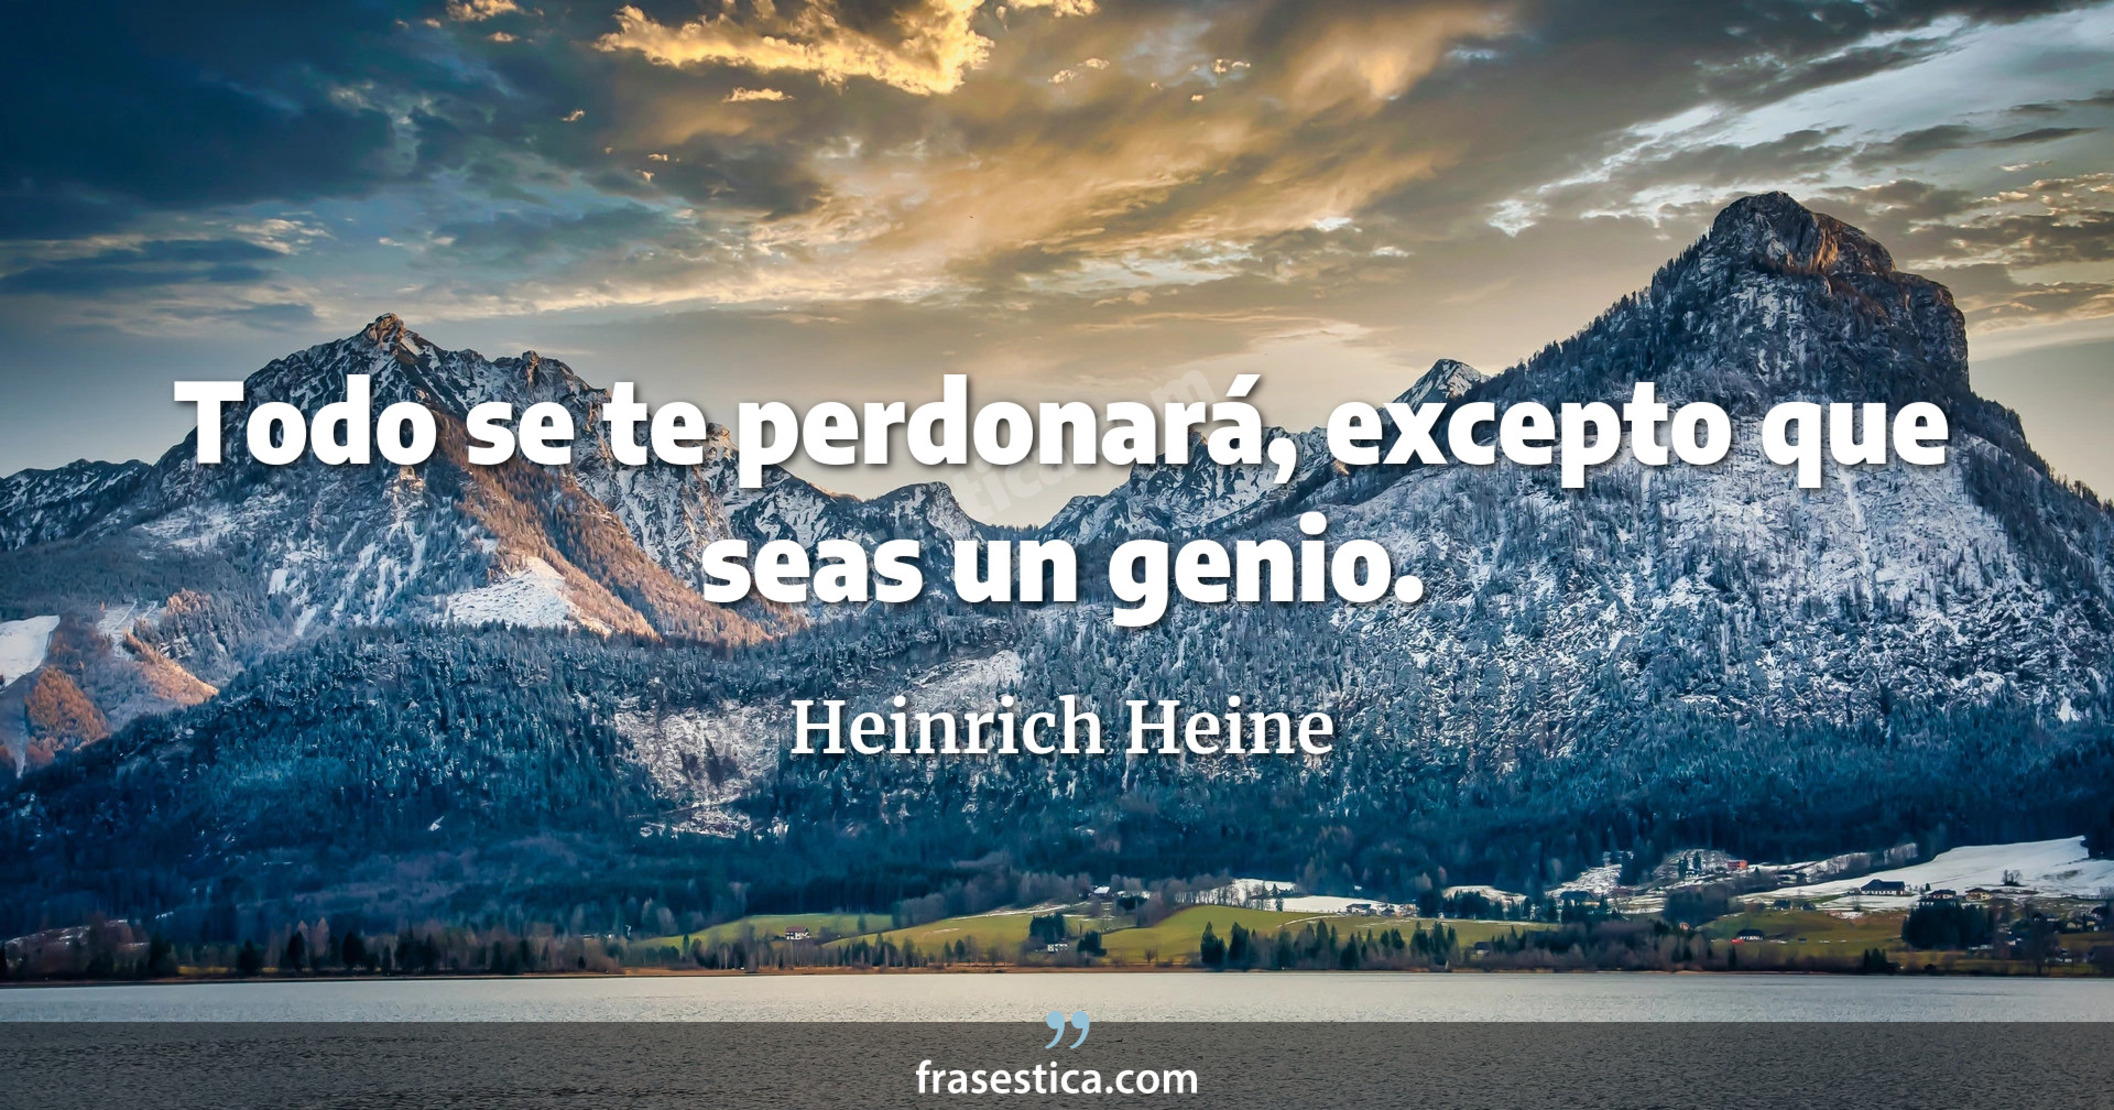 Todo se te perdonará, excepto que seas un genio. - Heinrich Heine